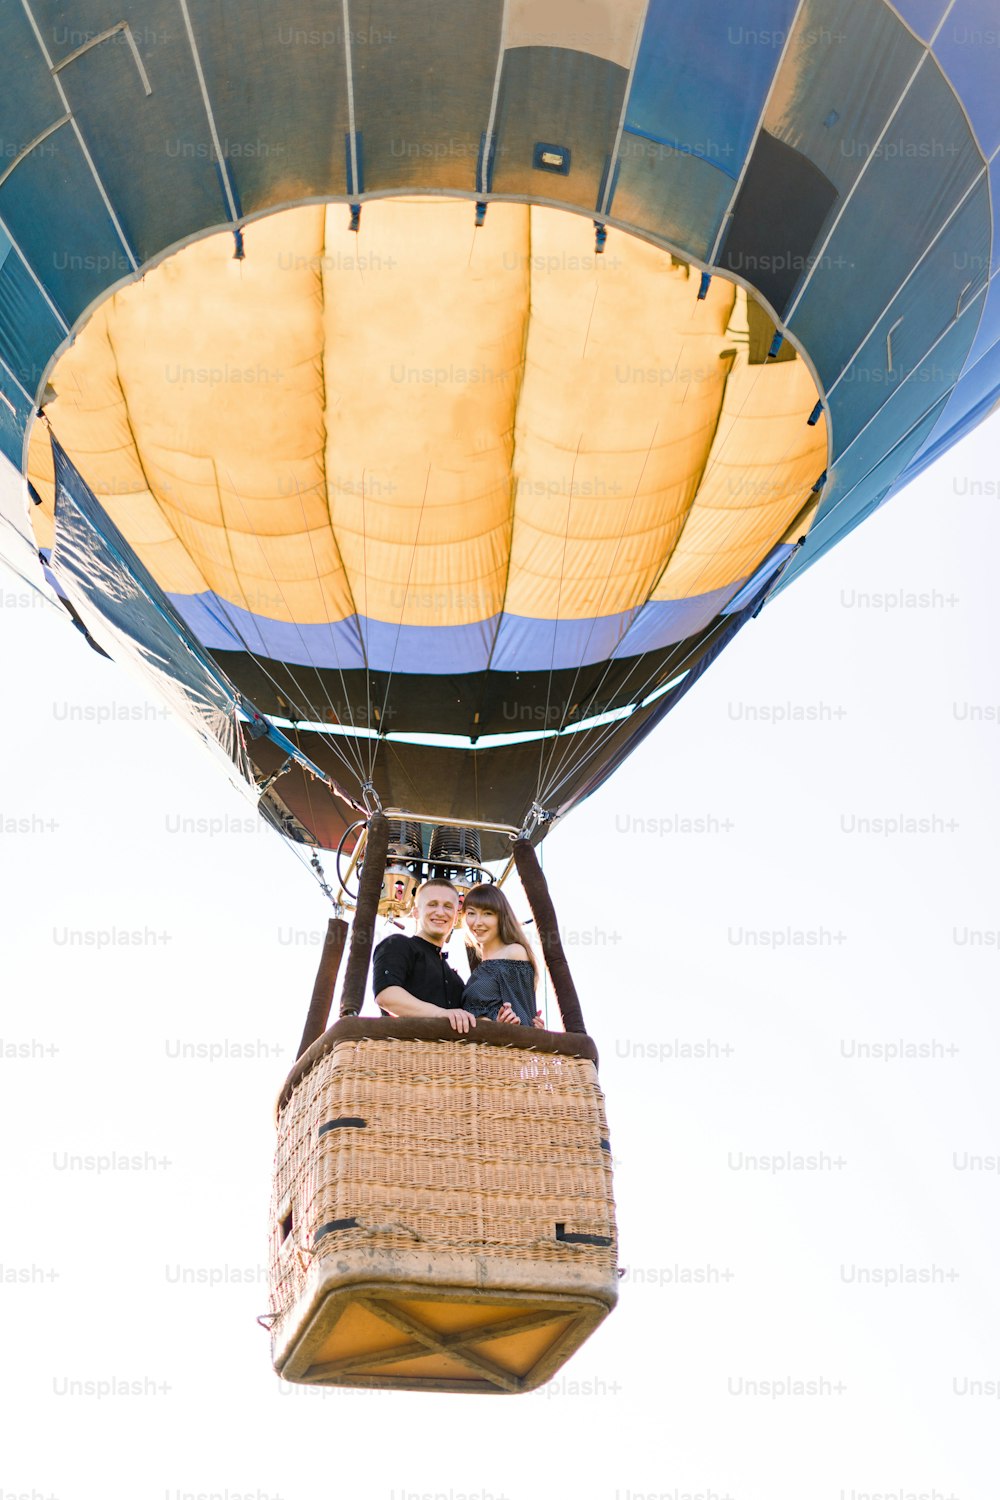 Lindo casal romântico abraçado na cesta de balão de ar quente, voando no verão noite ensolarada. Aventura romântica, amor no conceito de voo. Vista do terreno.